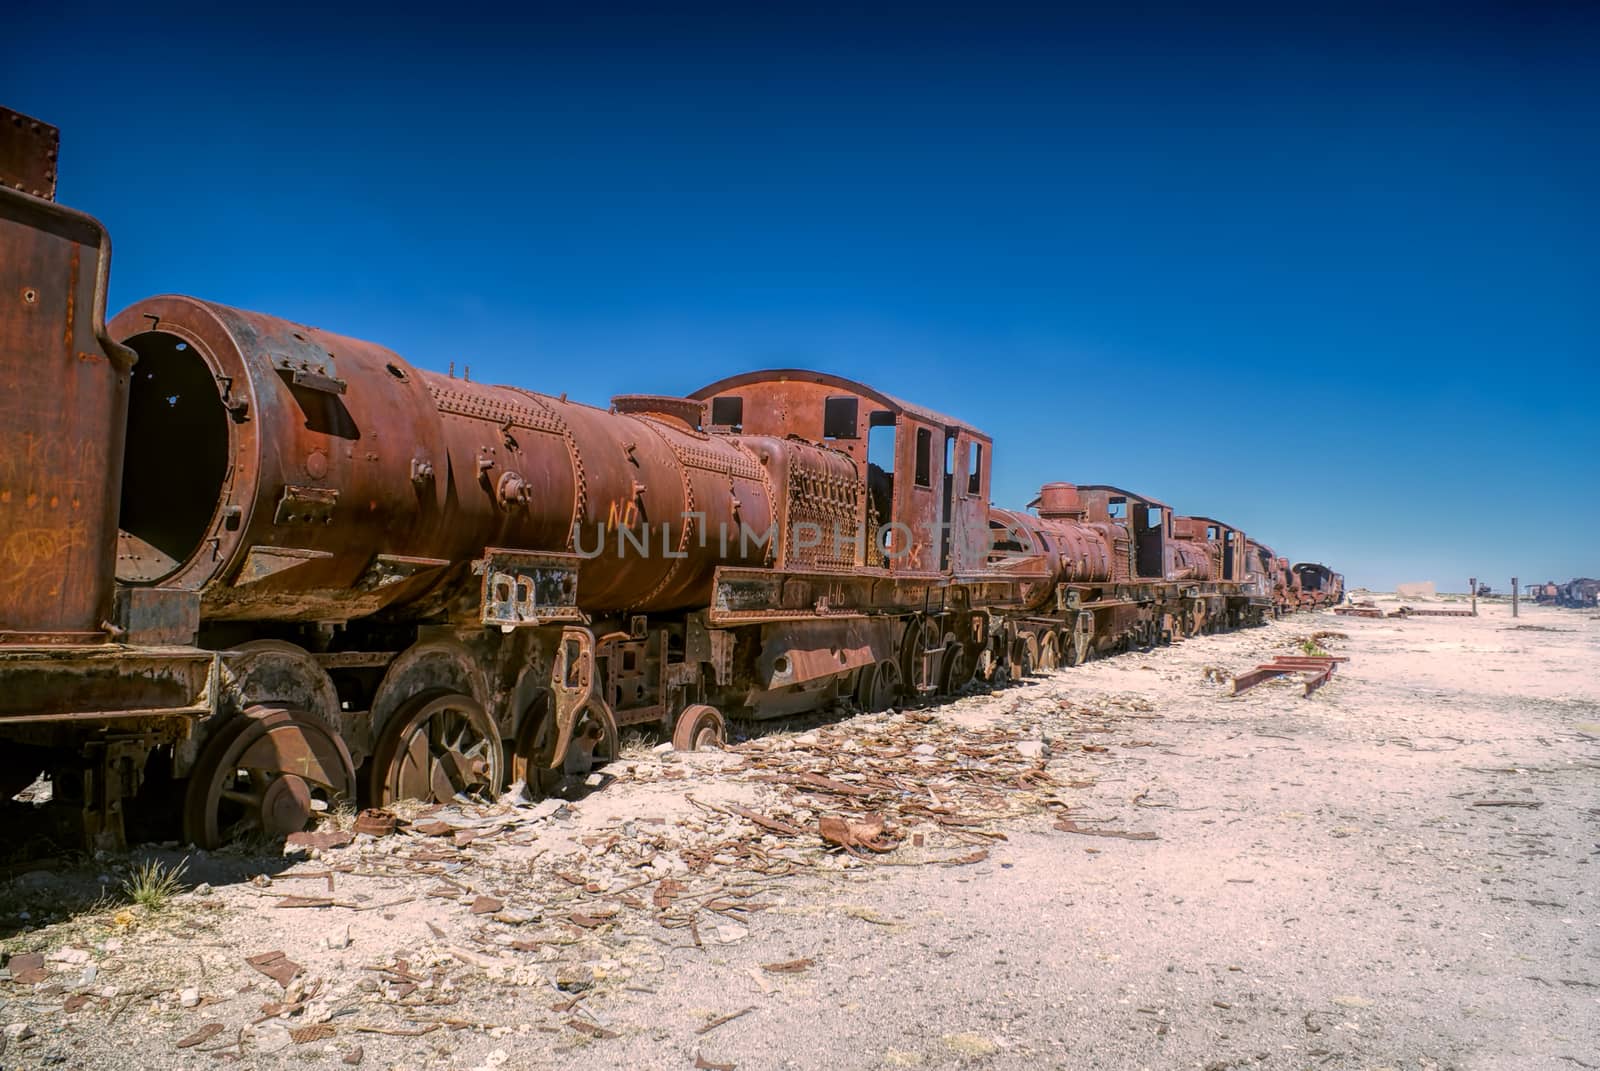 Old locomotive graveyard in desert near Salar de Uyuni in Bolivia          